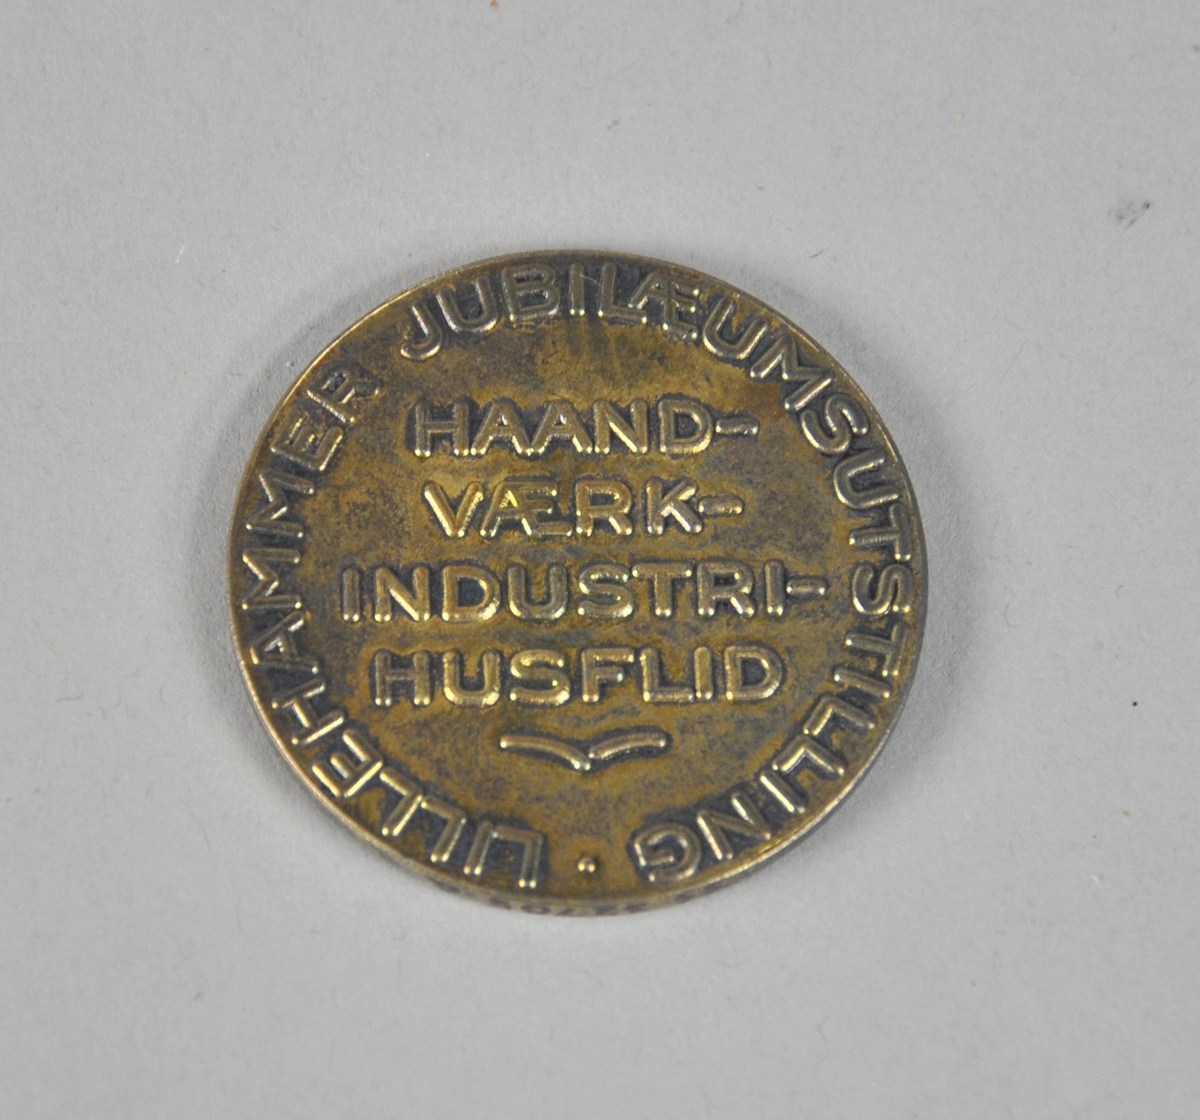 Rund medalje av bronse, med Lillehammer byvåpen i midten med laubærkrans rundt kanten. Tekst på baksiden.